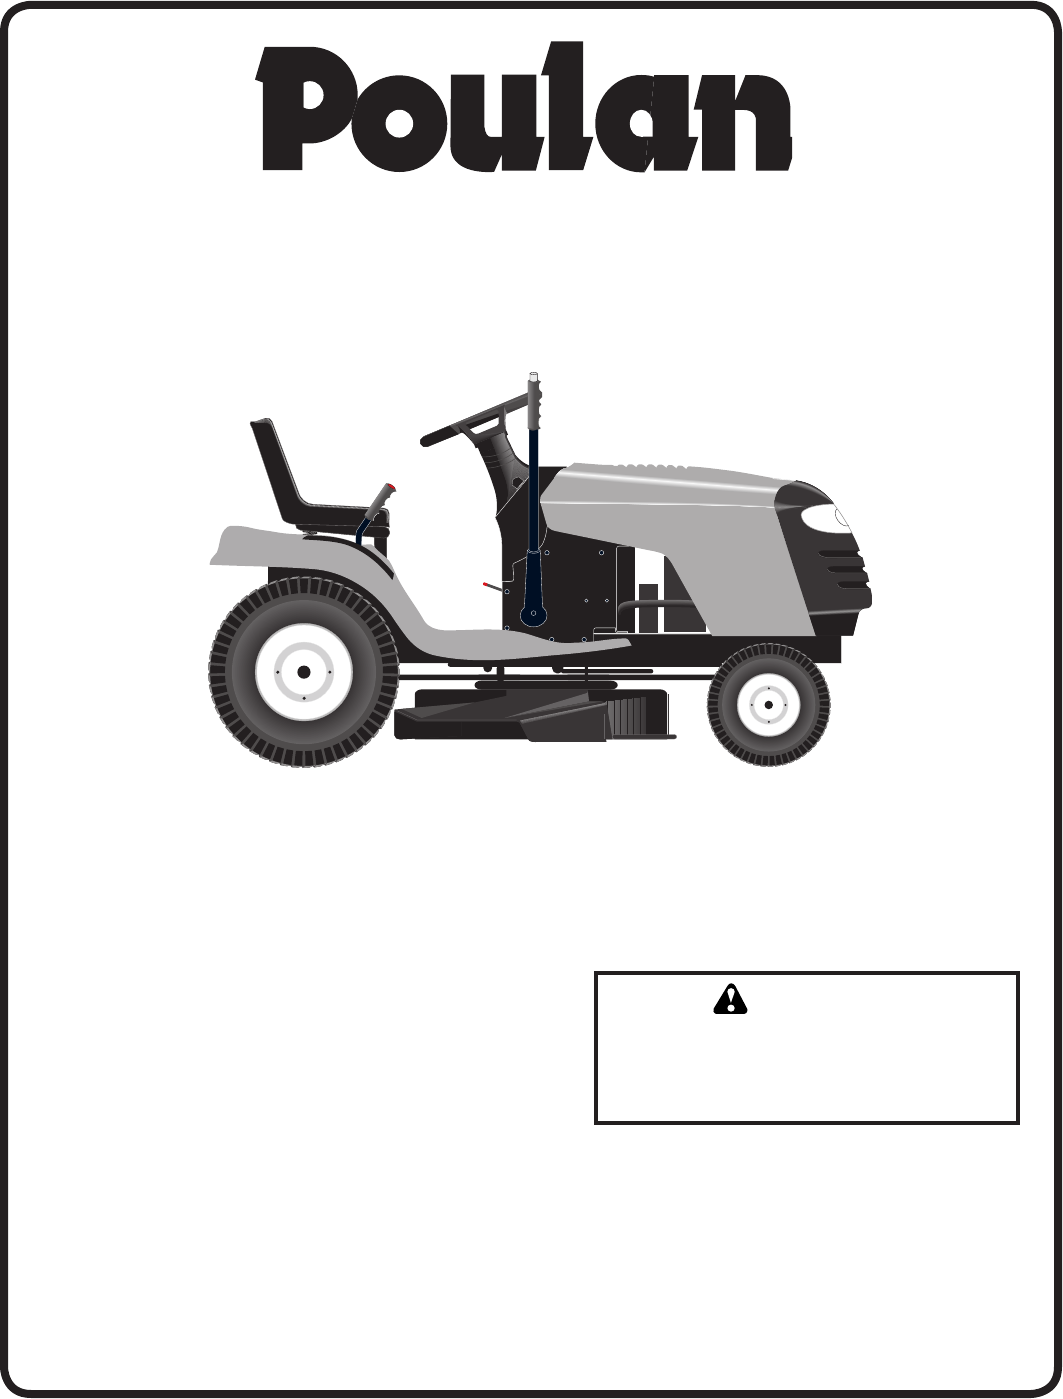 Poulan PO15538LT Lawn Mower User Manual